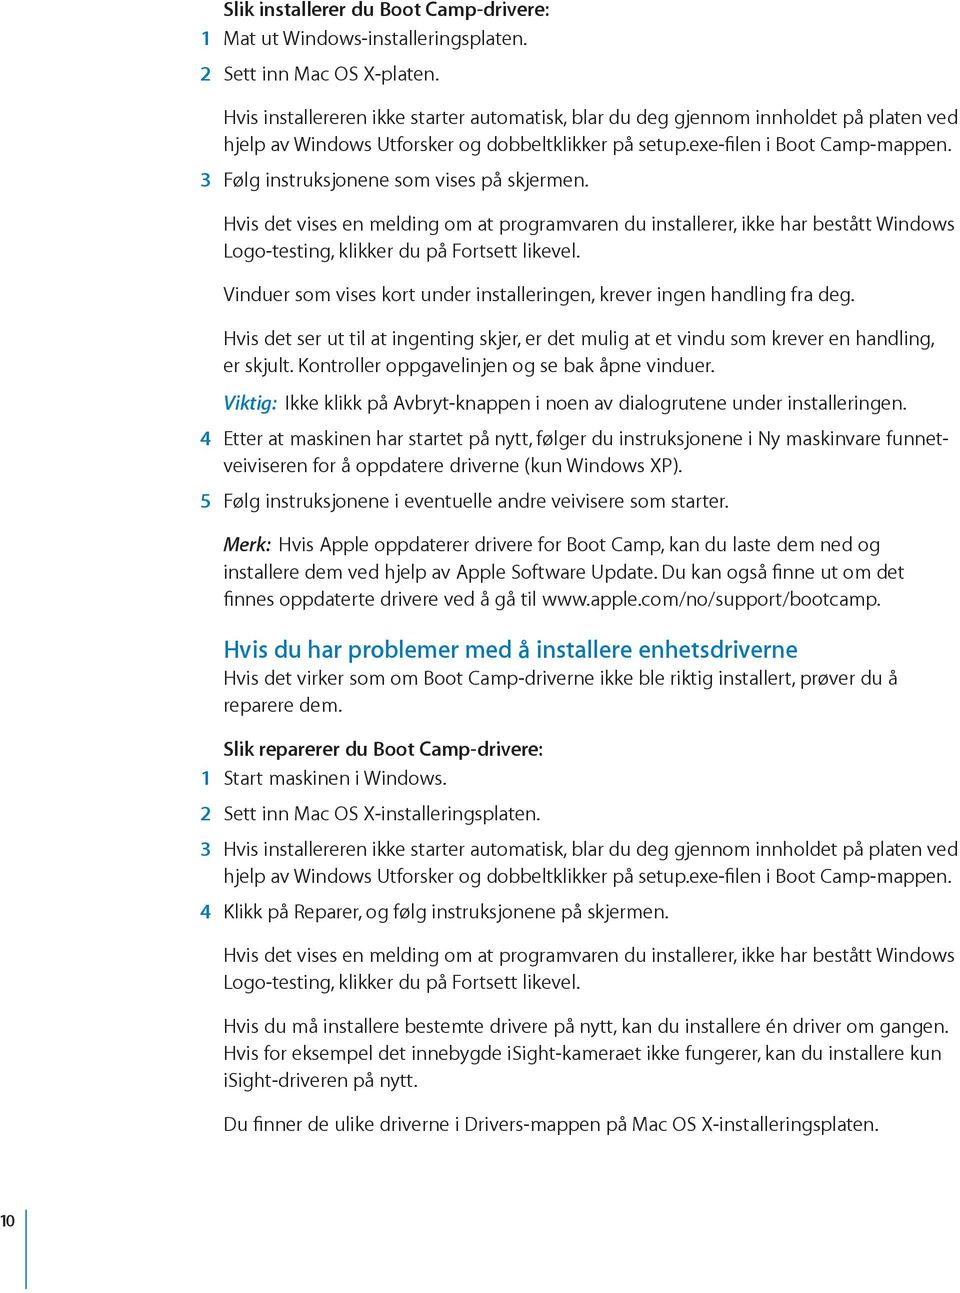 3 Følg instruksjonene som vises på skjermen. Hvis det vises en melding om at programvaren du installerer, ikke har bestått Windows Logo-testing, klikker du på Fortsett likevel.